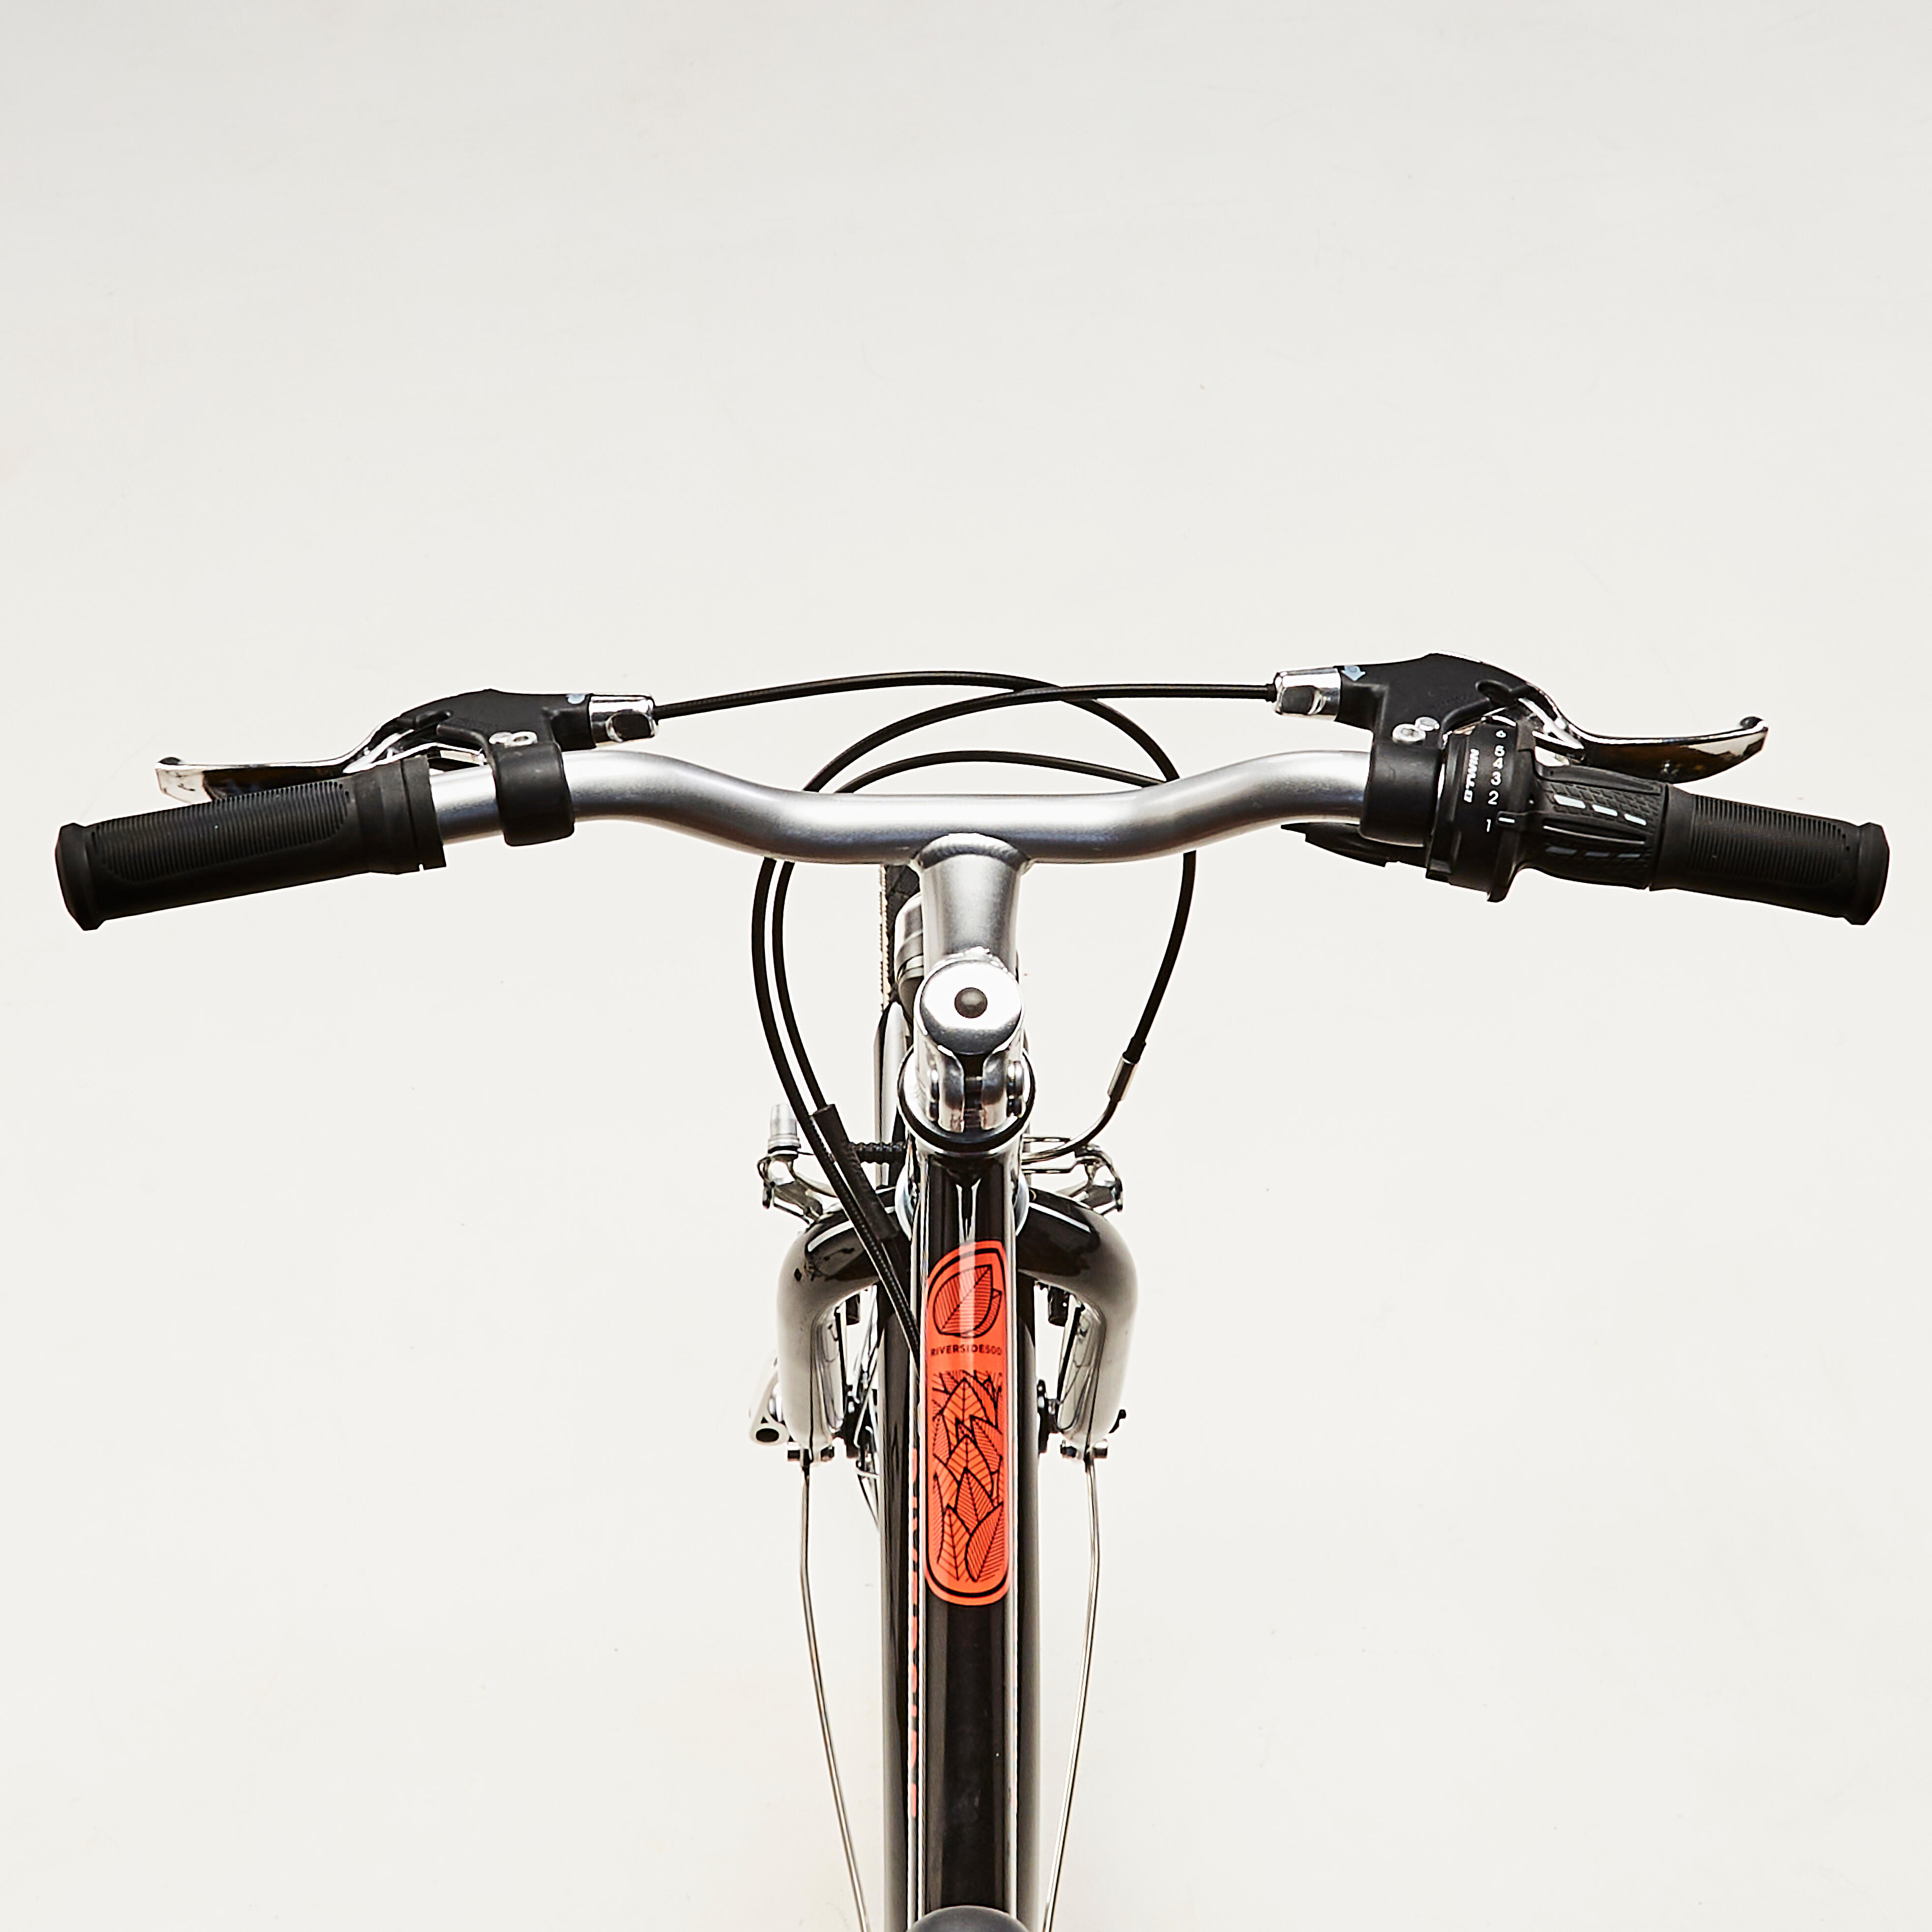 Vélo hybride enfant 20'' 6-9 ans - Riverside 500 noir/rouge - BTWIN